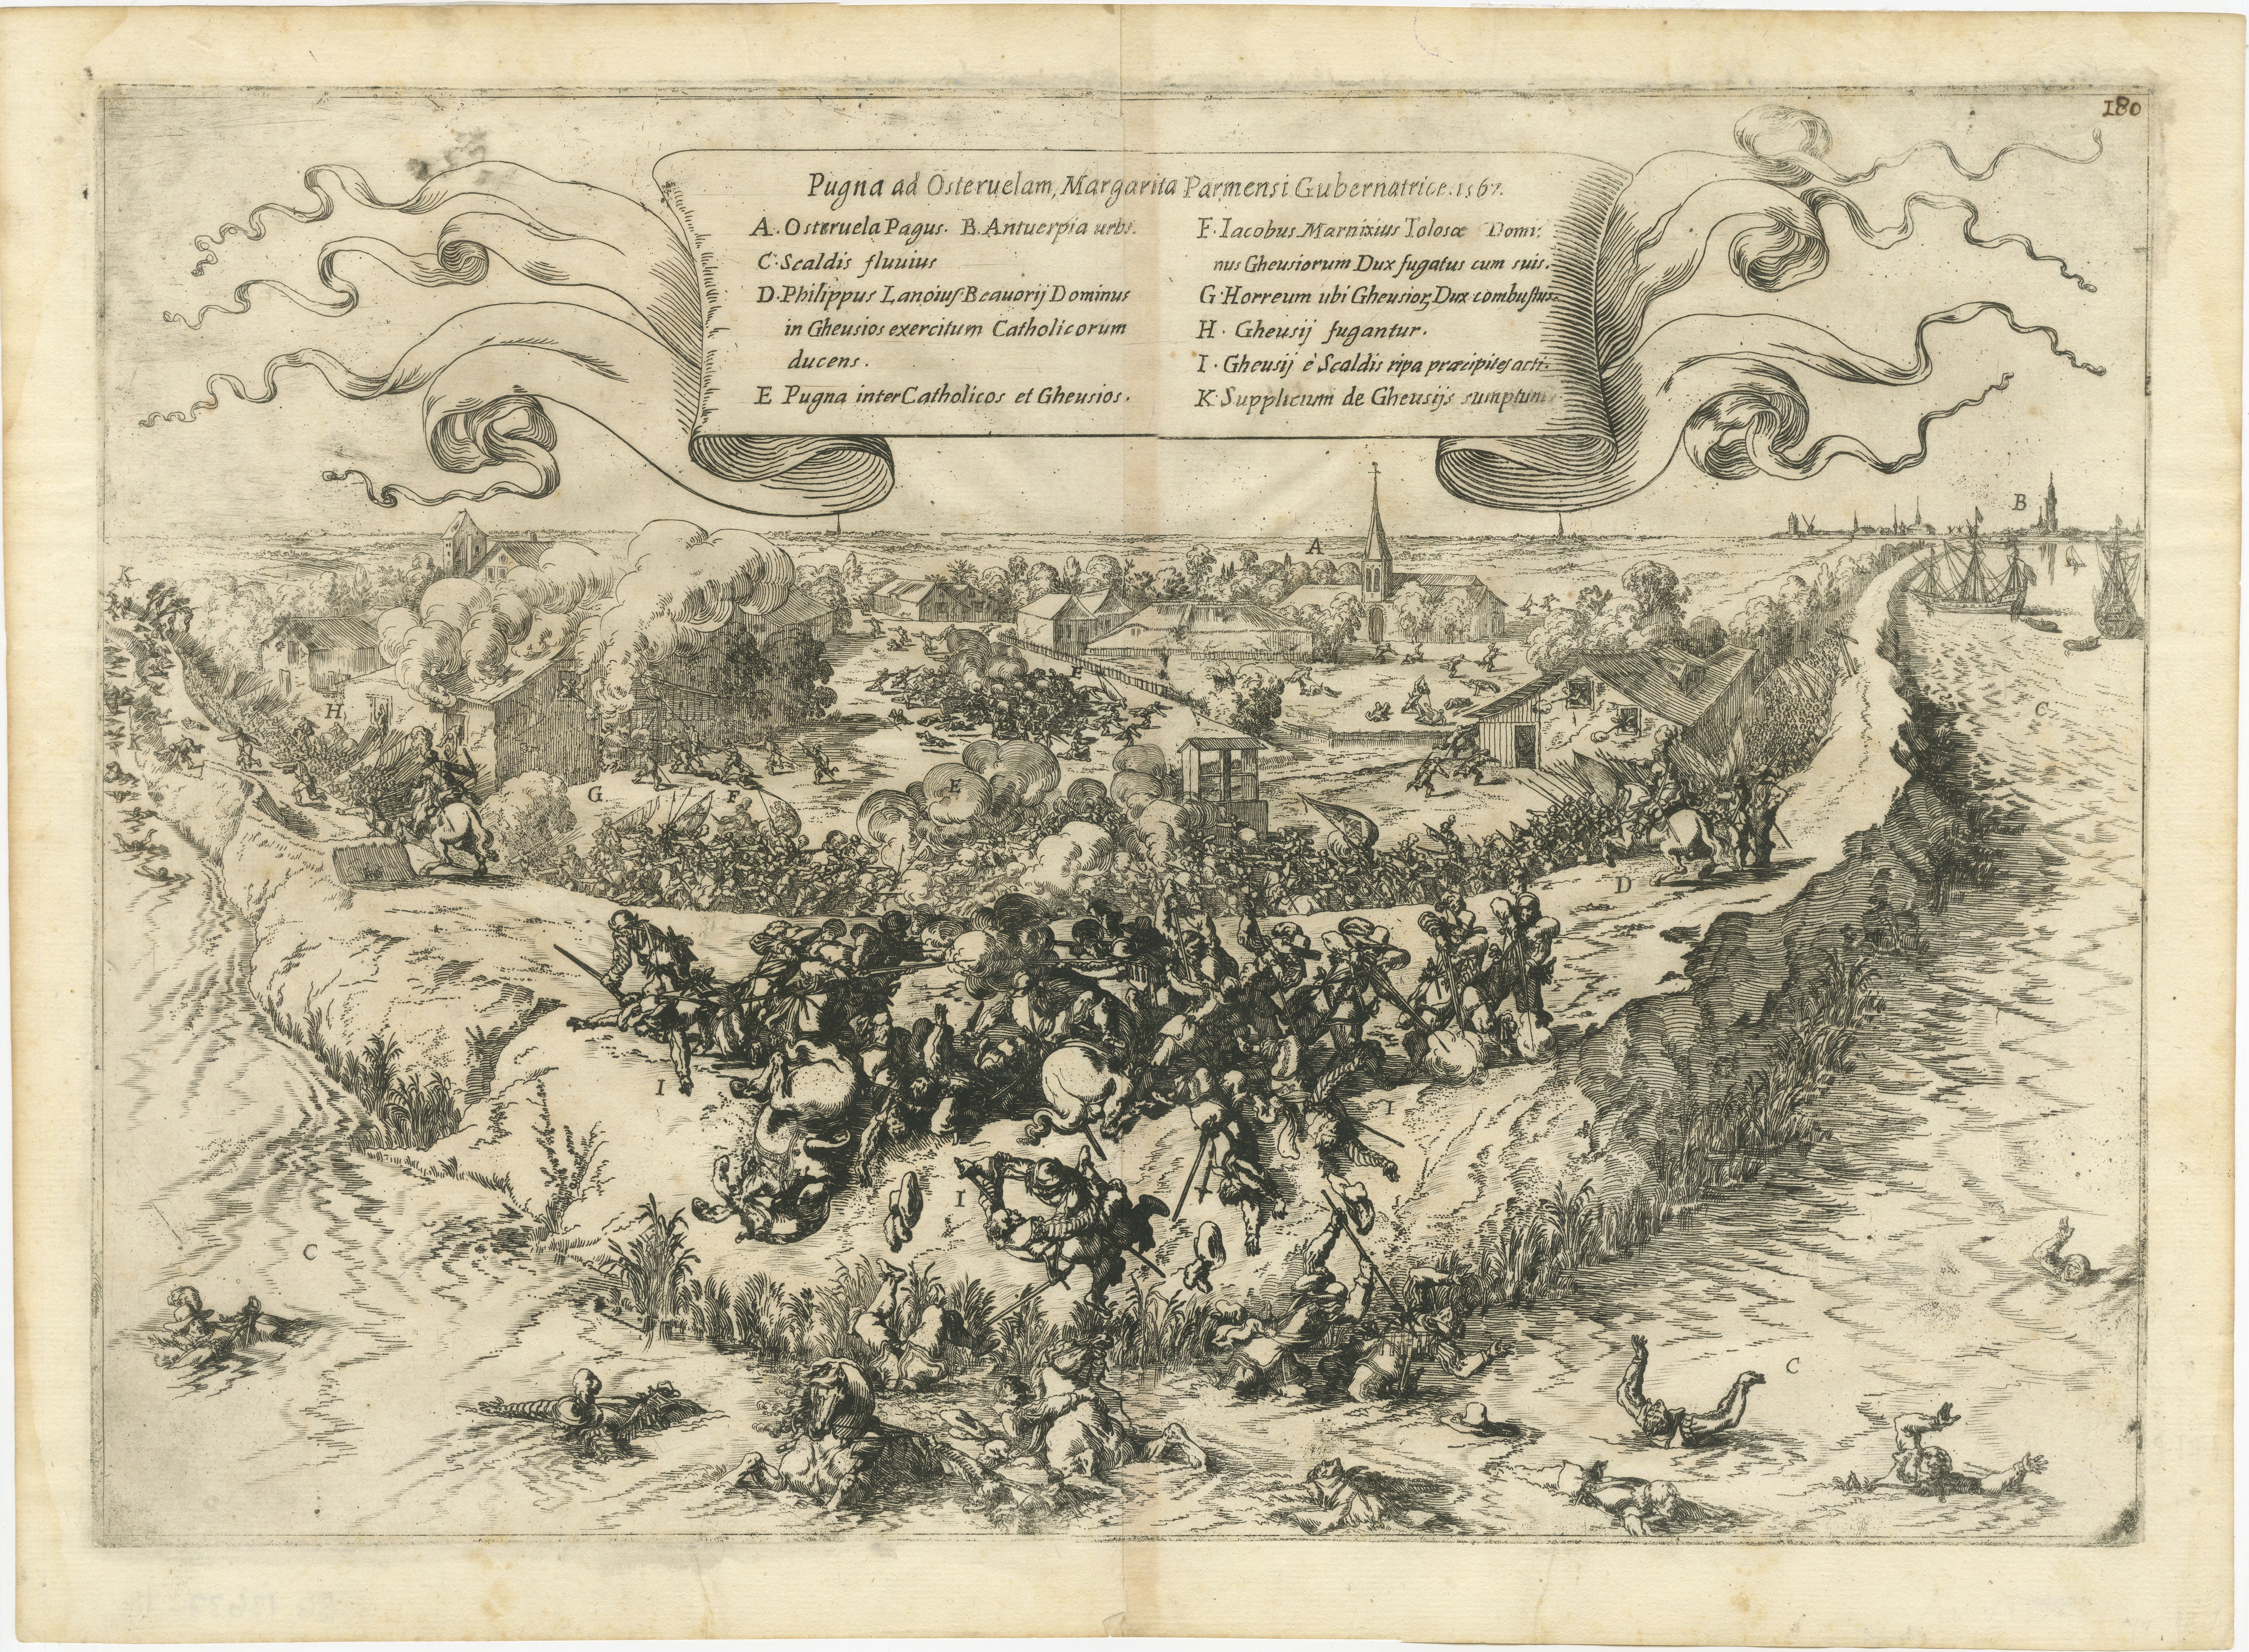 Gravure ancienne originale de la bataille d'Oosterweel, qui s'est déroulée en 1567 pendant la révolte néerlandaise. Il s'agit d'un conflit précoce qui précède la guerre de quatre-vingts ans. La bataille a été une défaite importante pour les rebelles